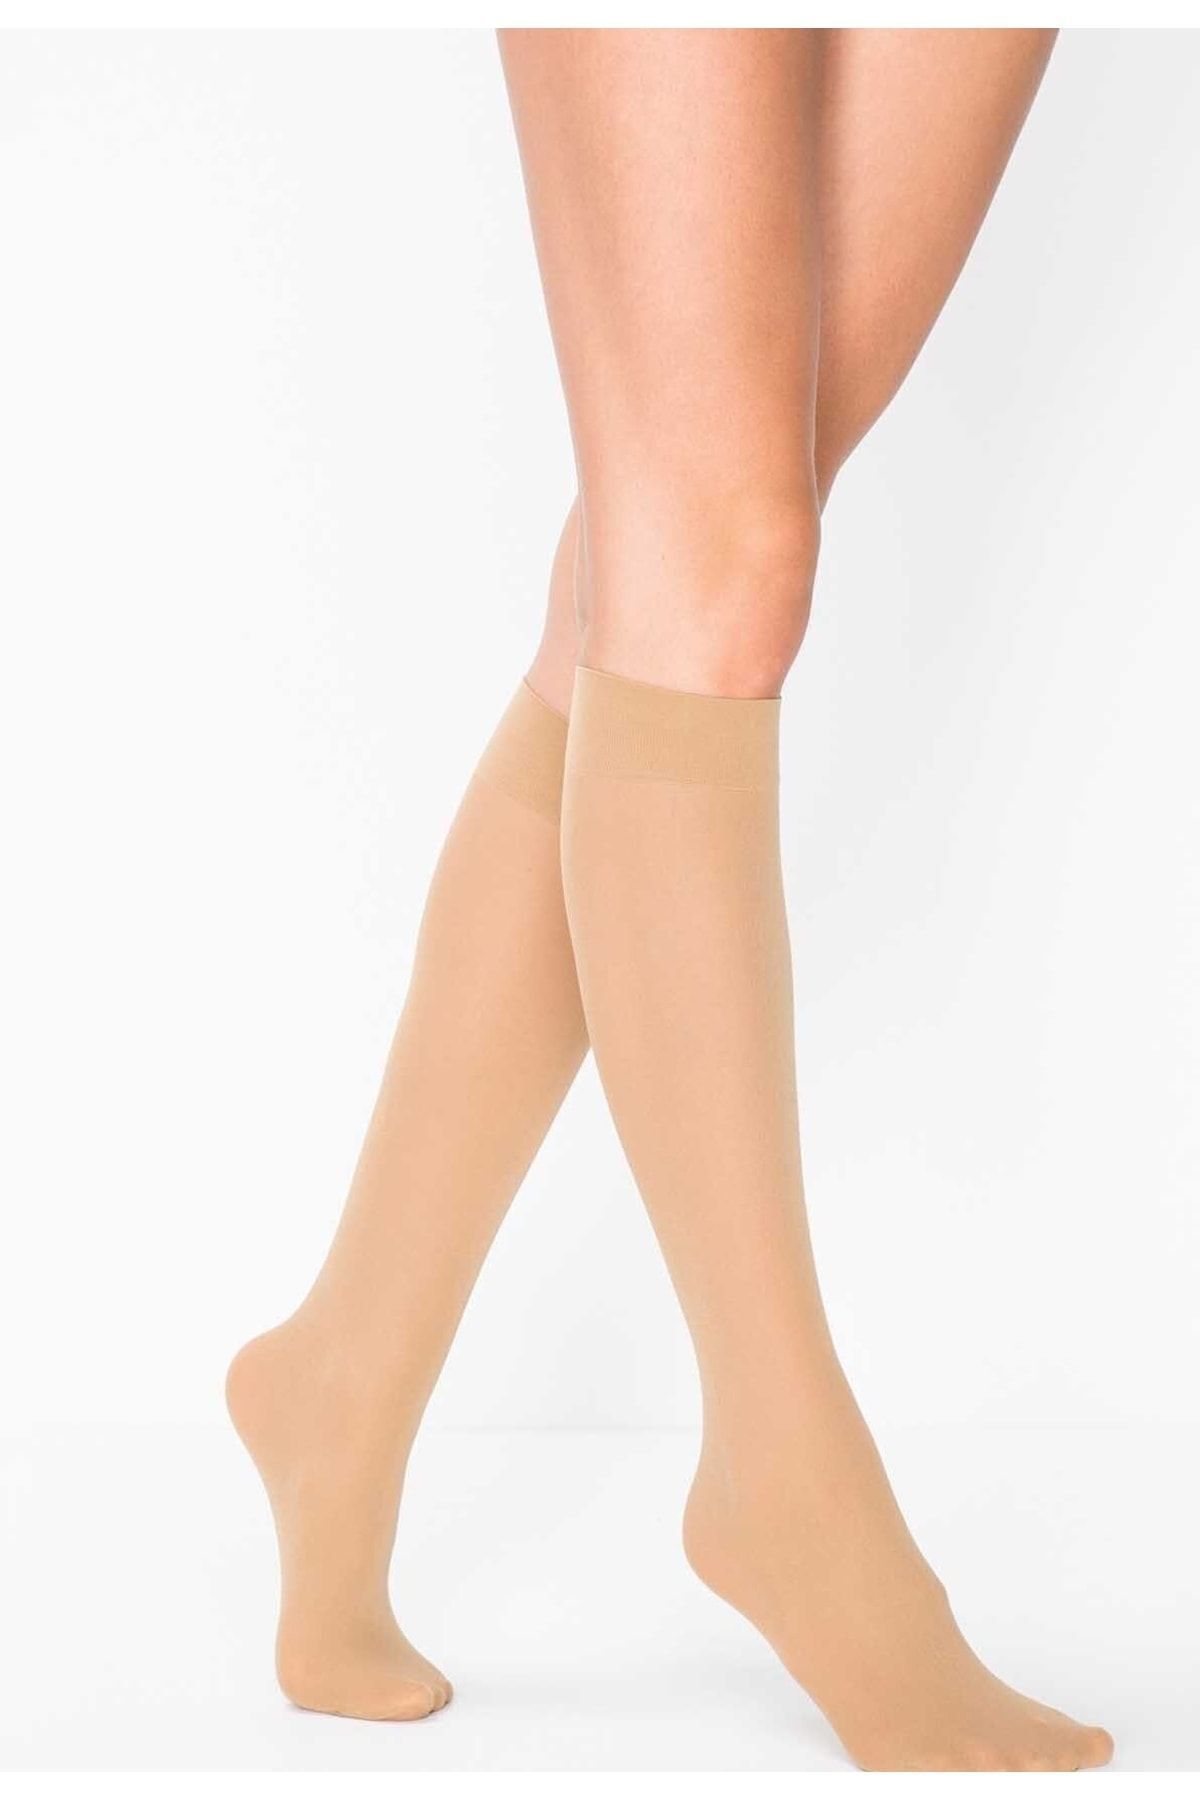 DORE Kadın Ten Rengi Mikro 40 Orta Kalın Opak Mus Dizaltı Pantolon Çorabı 2'li